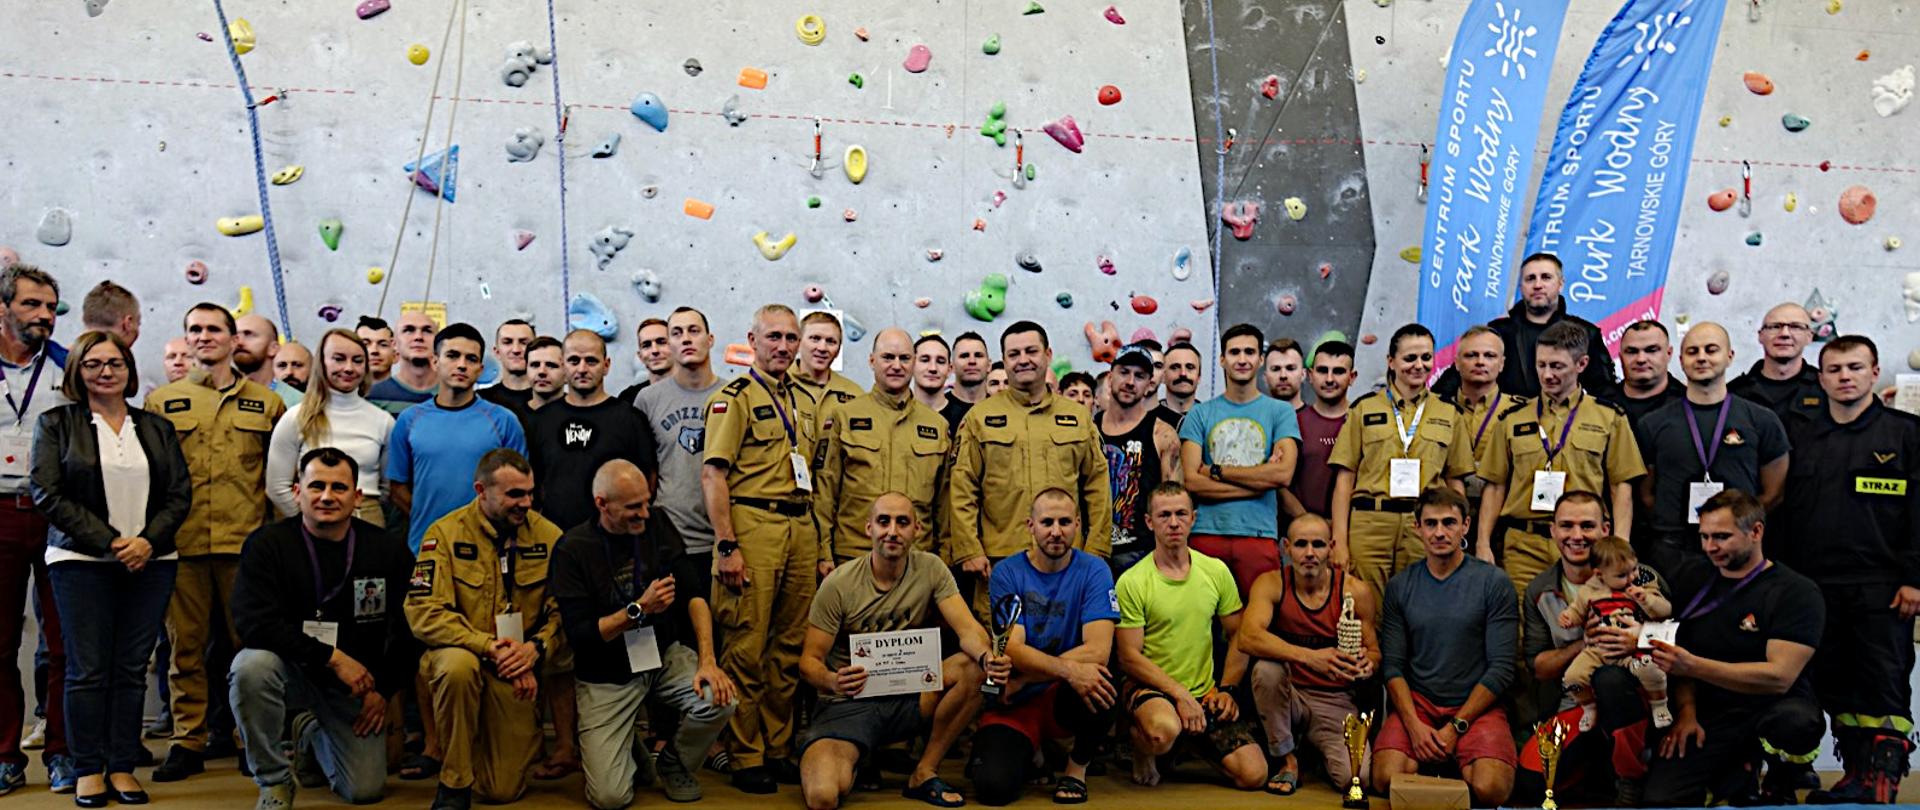 Grupa zawodników w strojach sportowych i strażaków w mundurach służbowych i ubraniach koszrowych ustawiona na tle ścianki wspinaczkowej, pozuje do zdjęcia grupowego.